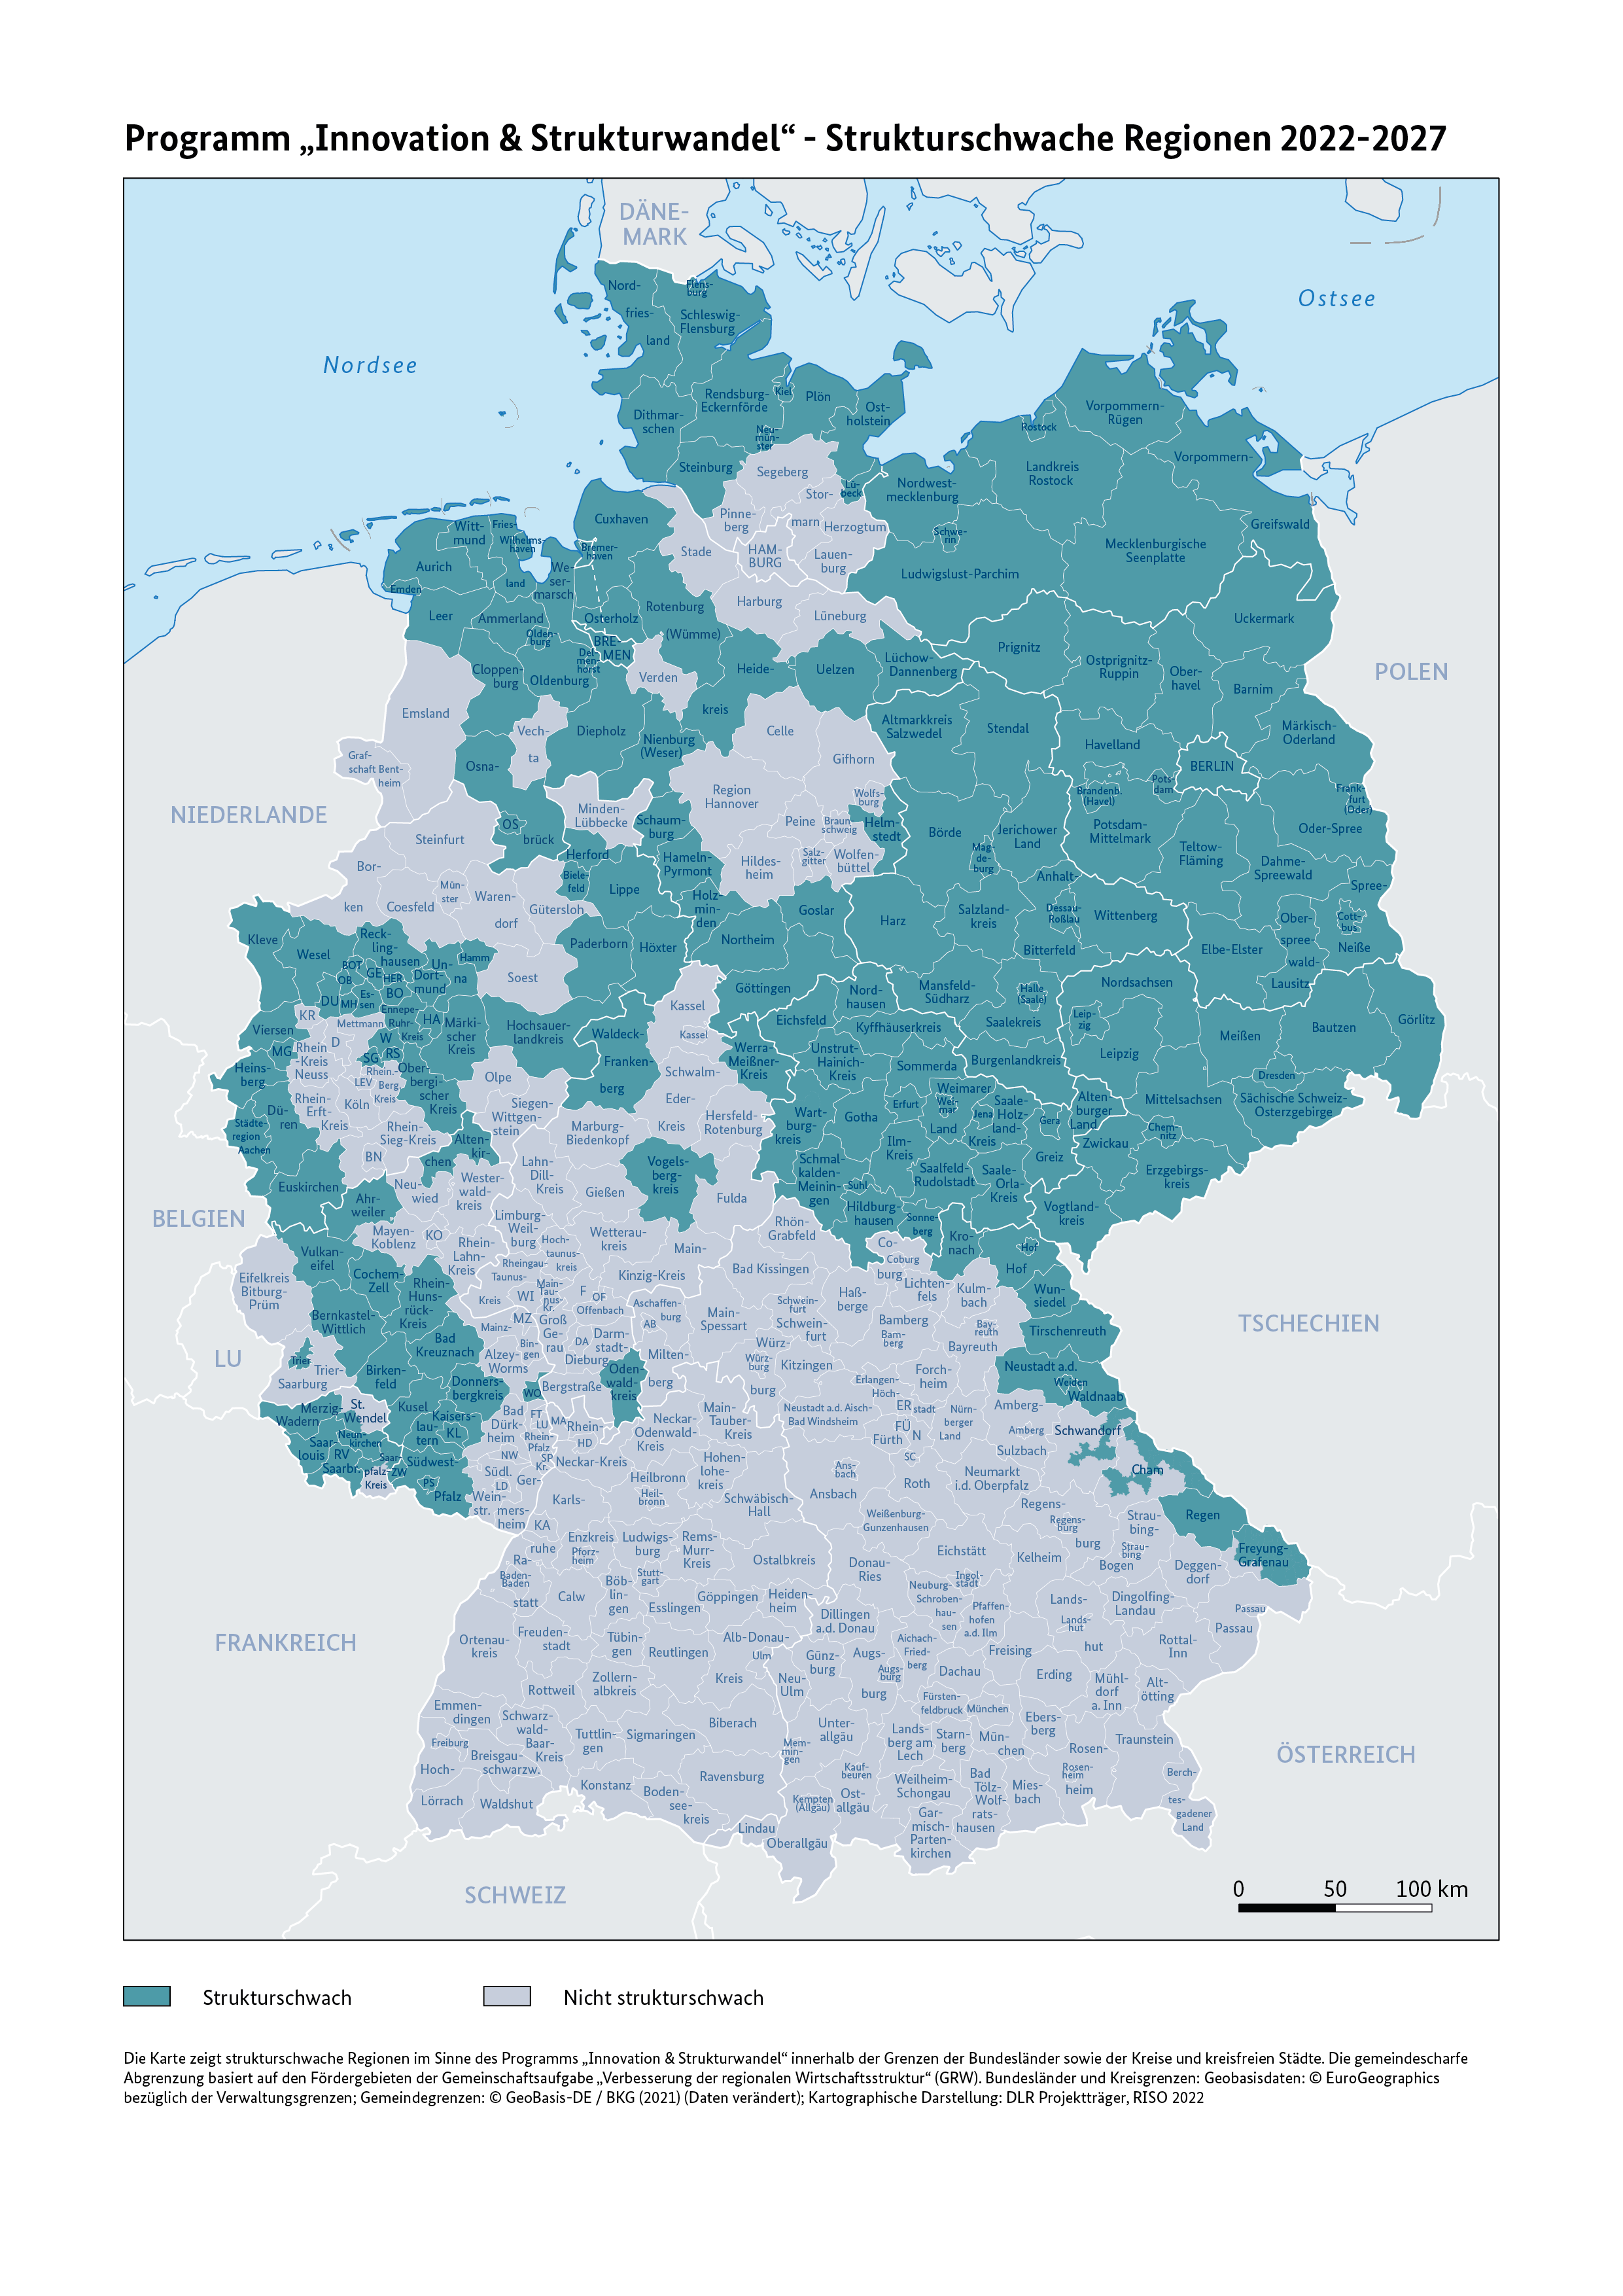 Karte der Strukturschwachen Regionen in Deutschland